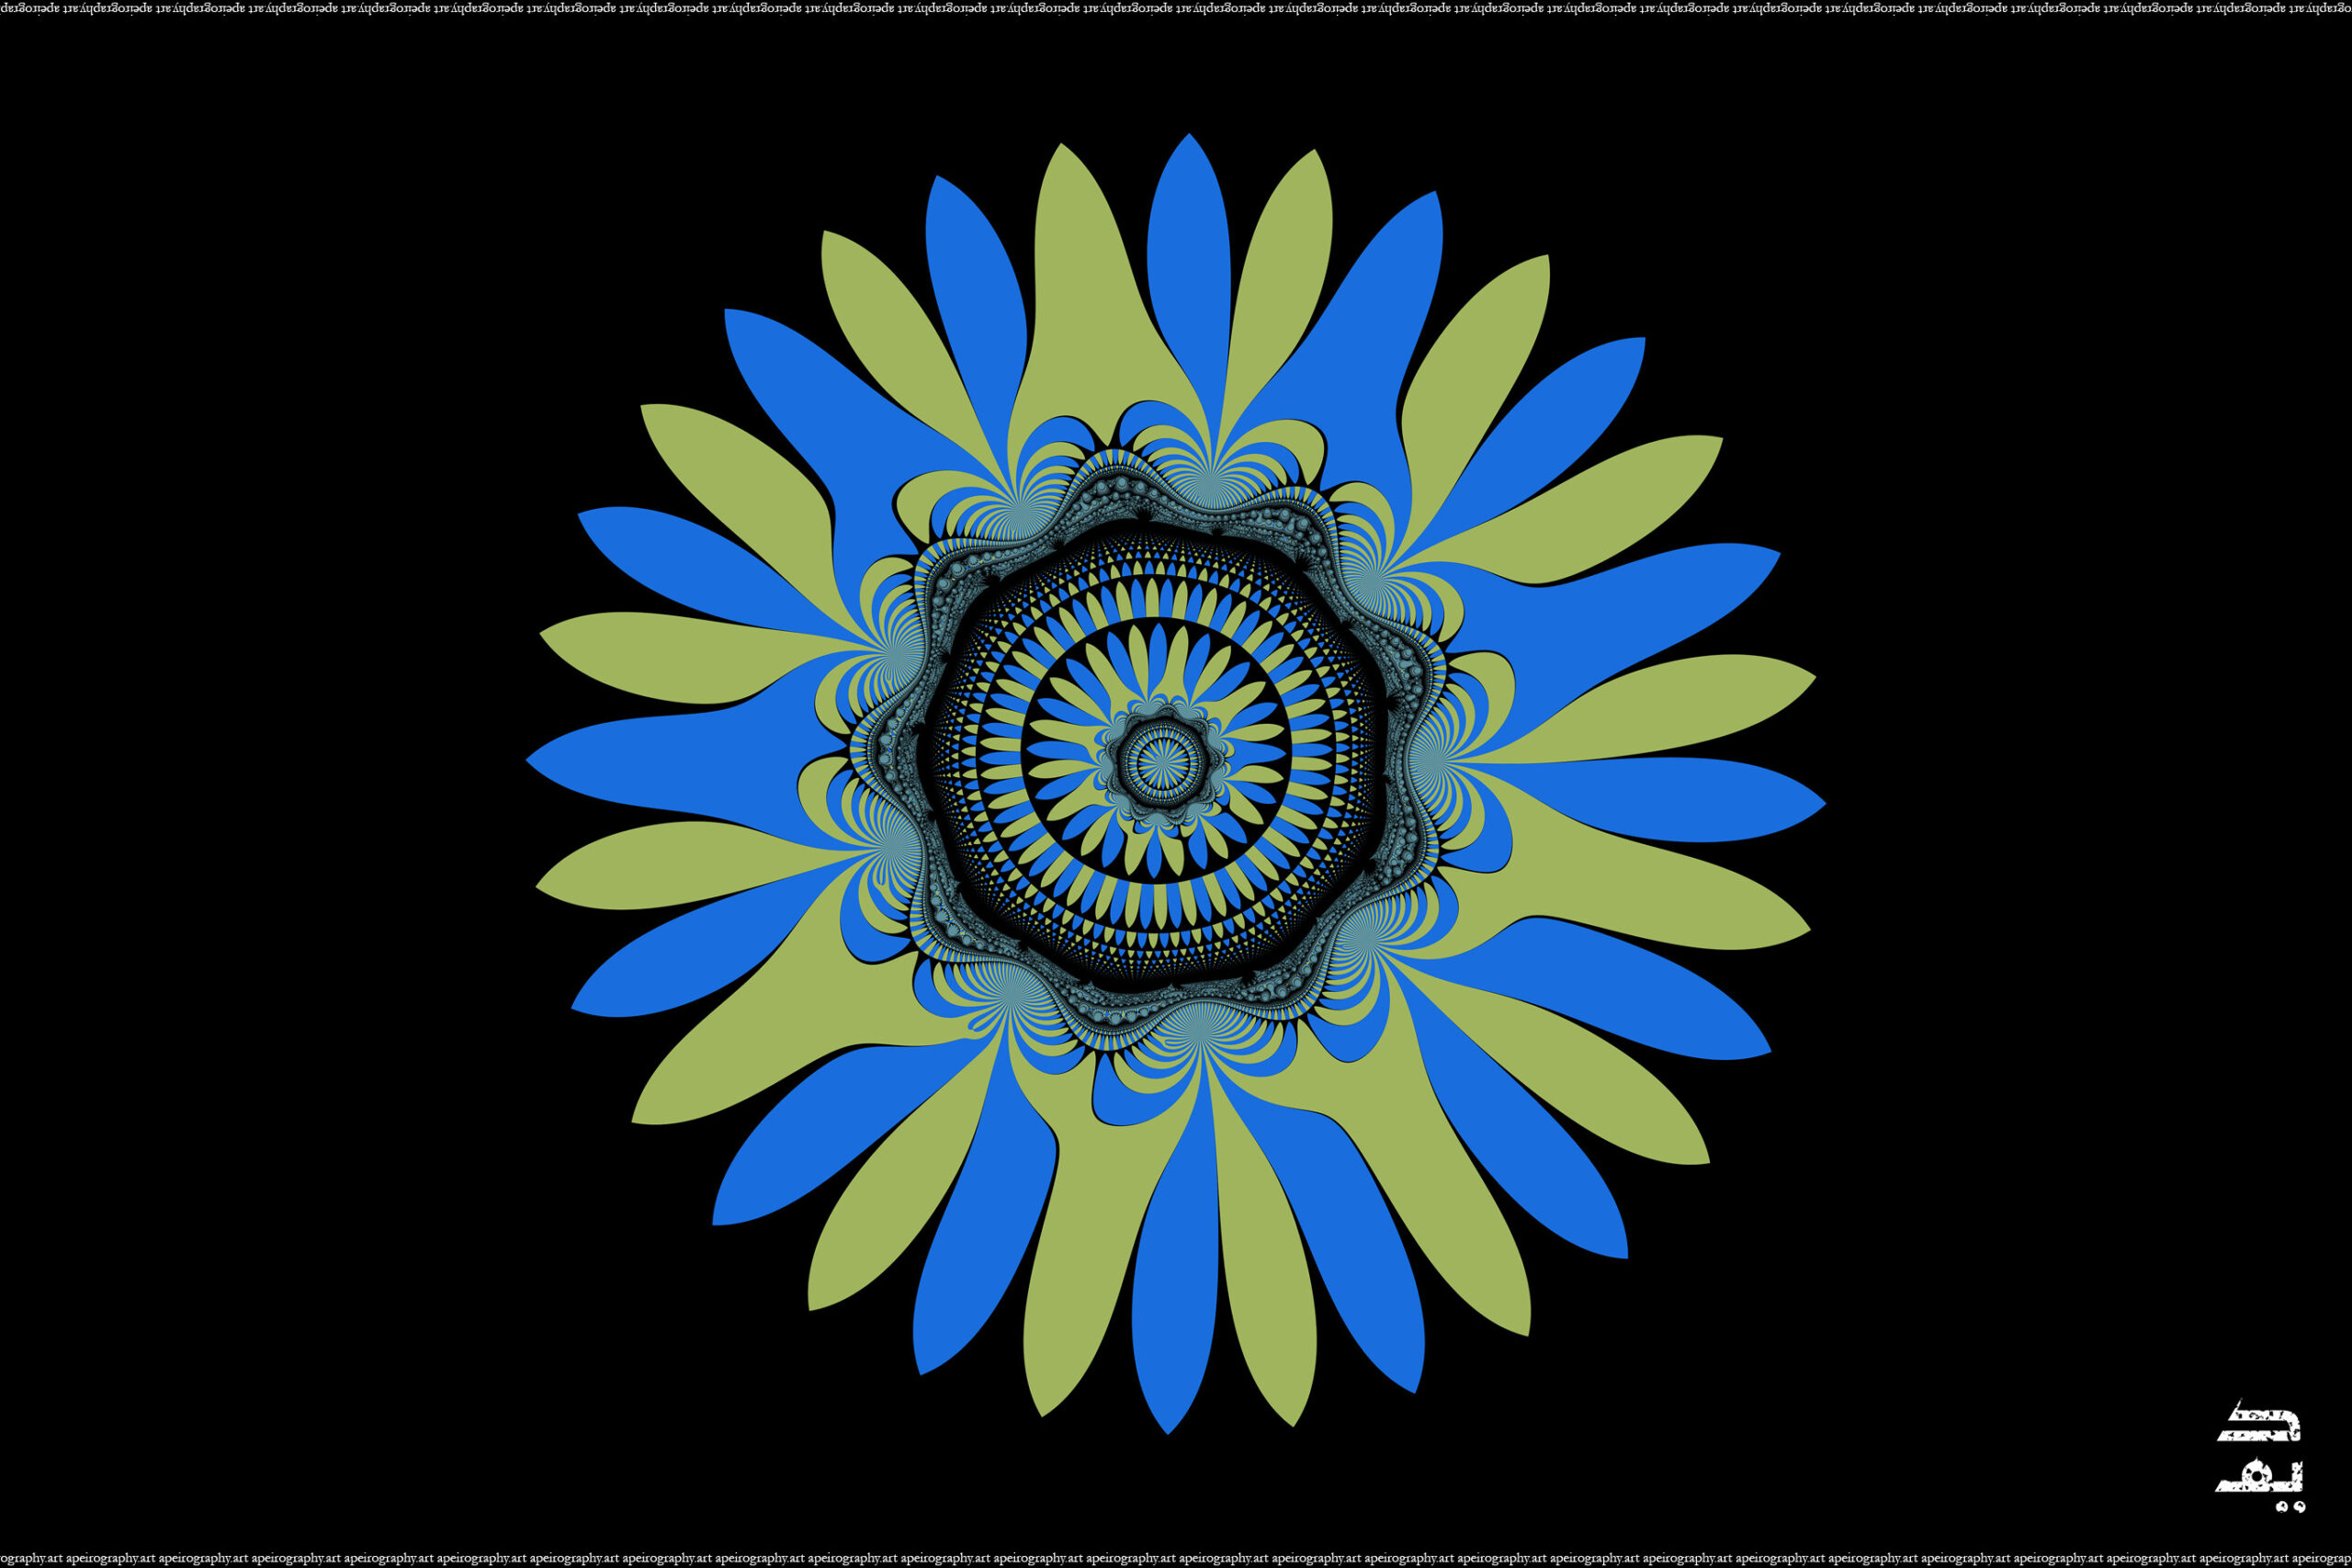 Apeirography_003_-_Gregarious_Tiandi_Flower